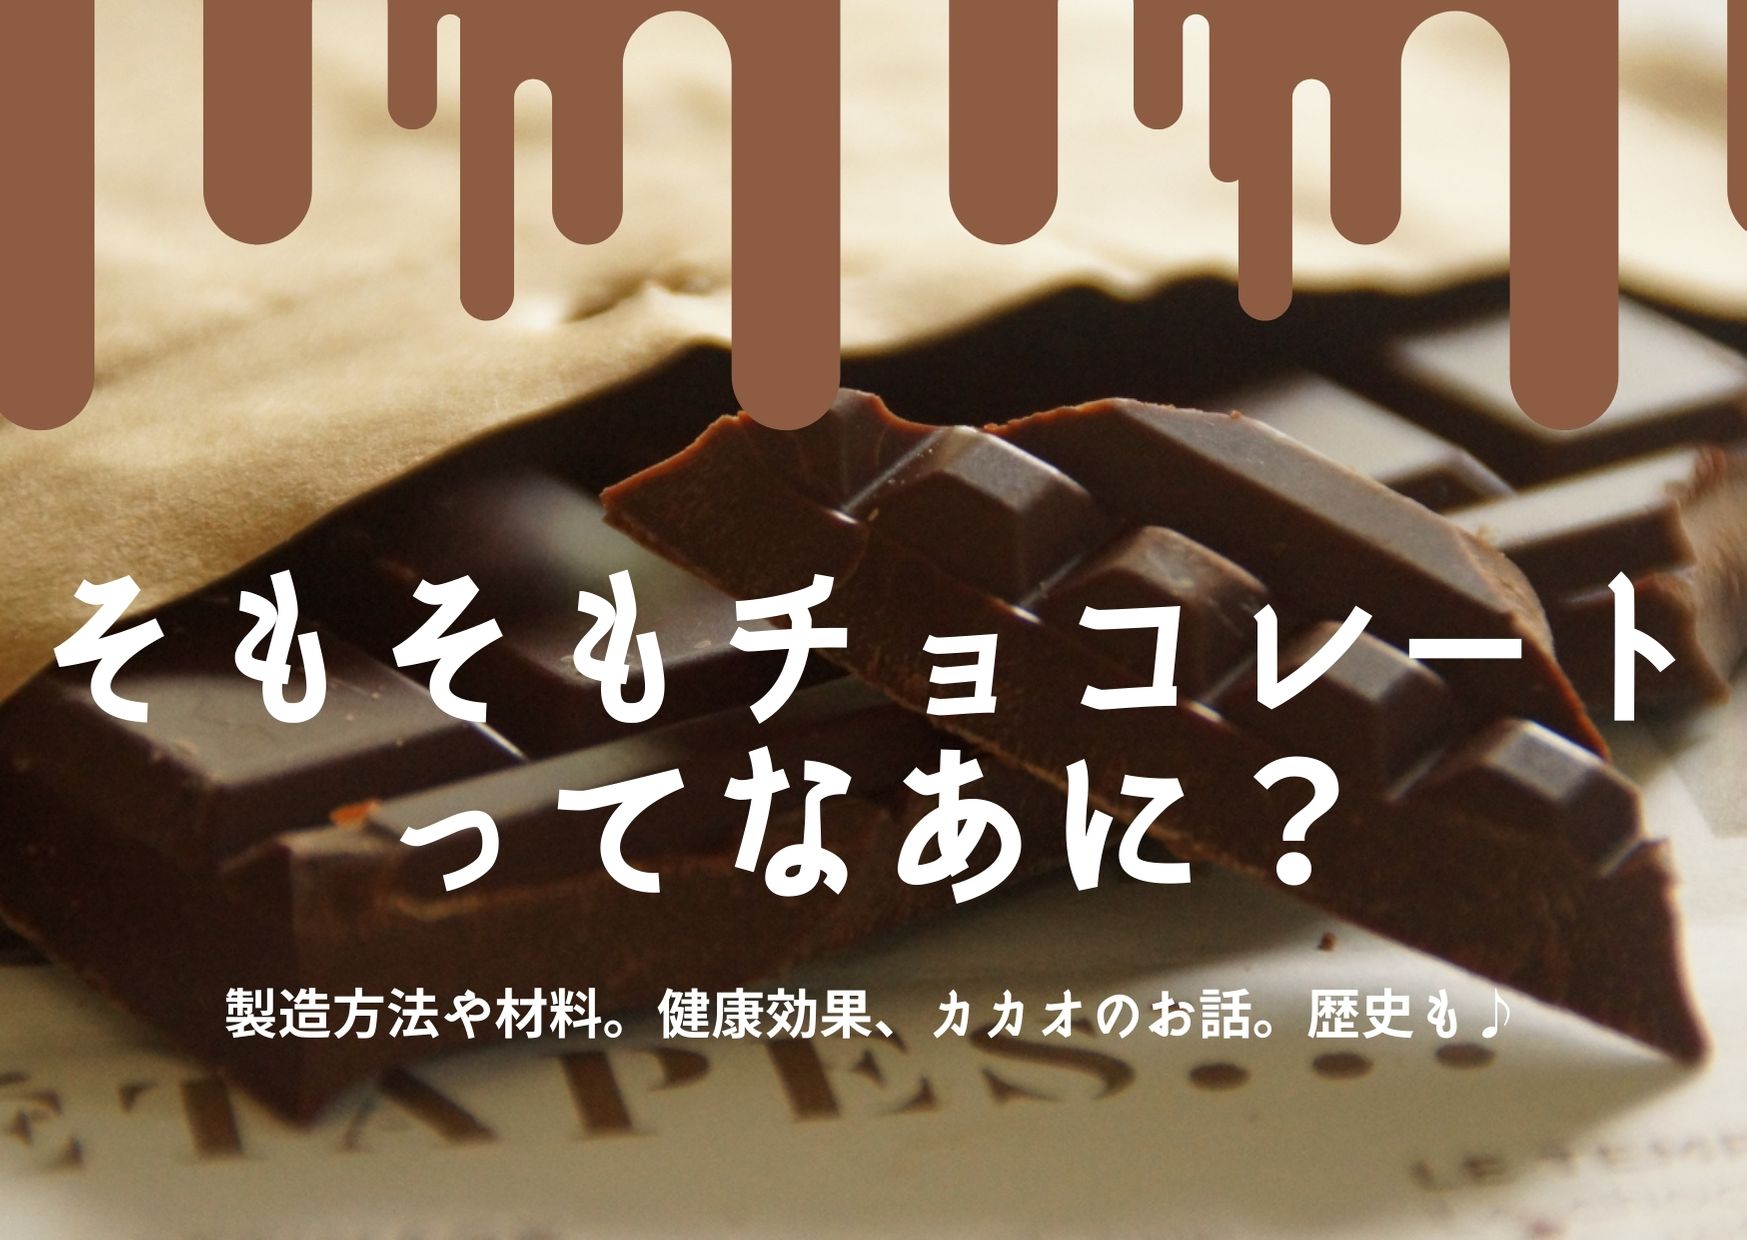 チョコレートとは？チョコレートの種類